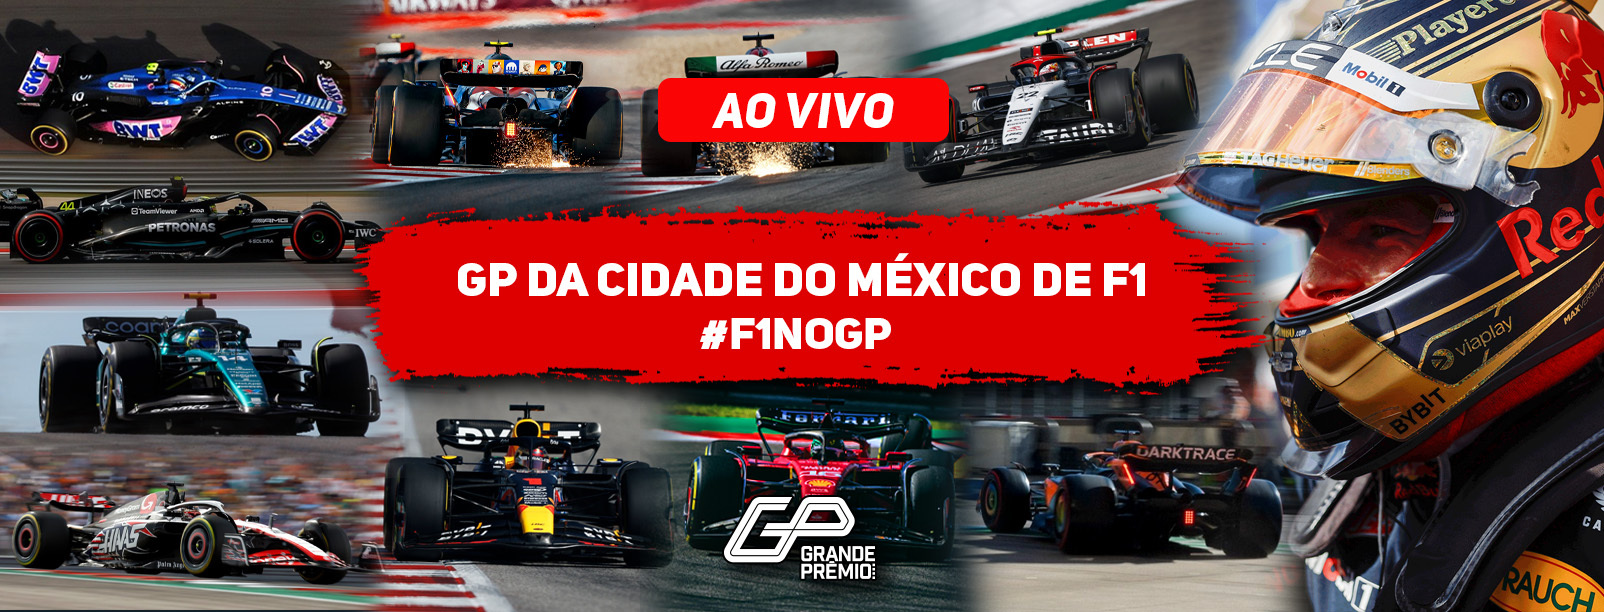 F1 23 TREINO LIVRE 1 GP MÉXICO AO VIVO BAND BANDSPORTS - FORMULA 1 2023  REACT TL1 CIDADE DO MÉXICO 